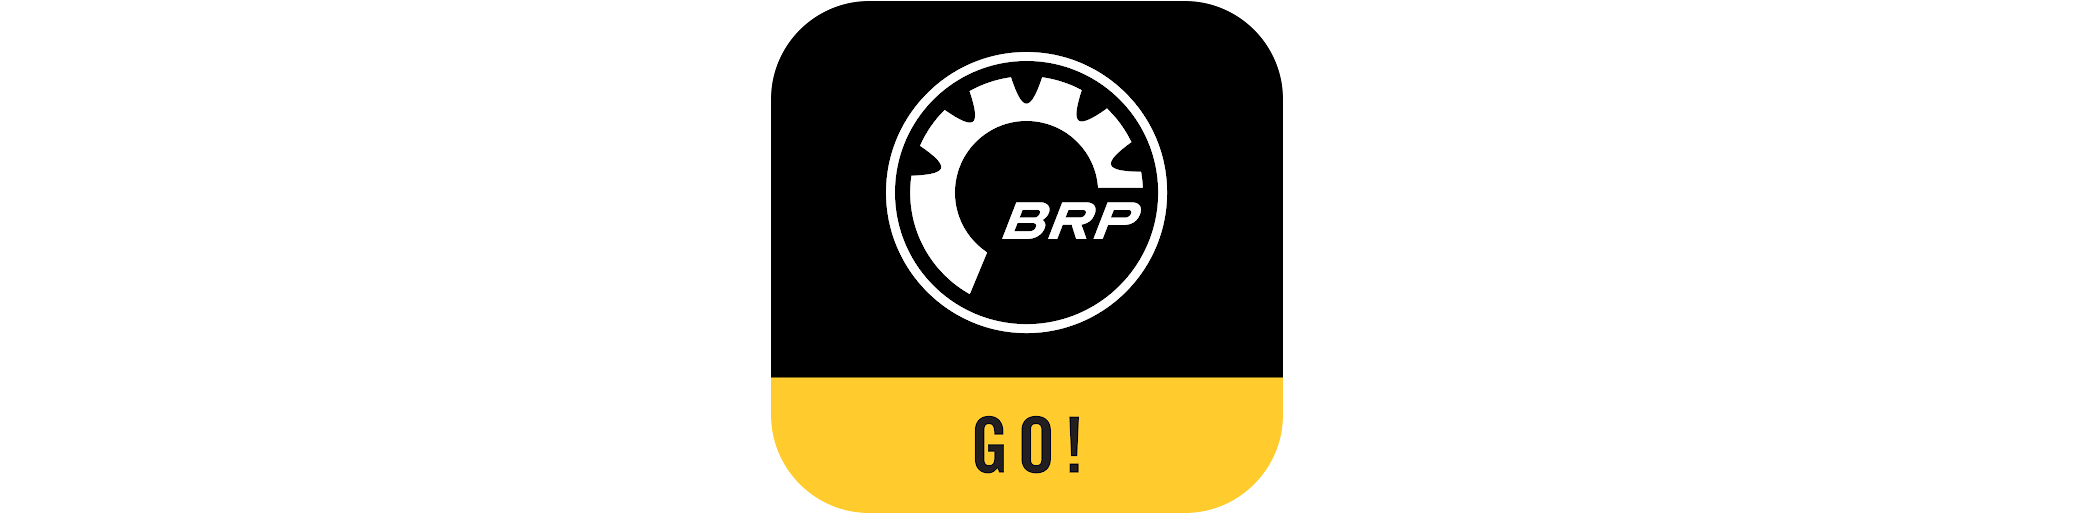 BRP GO! Aplikacija fabrički žig